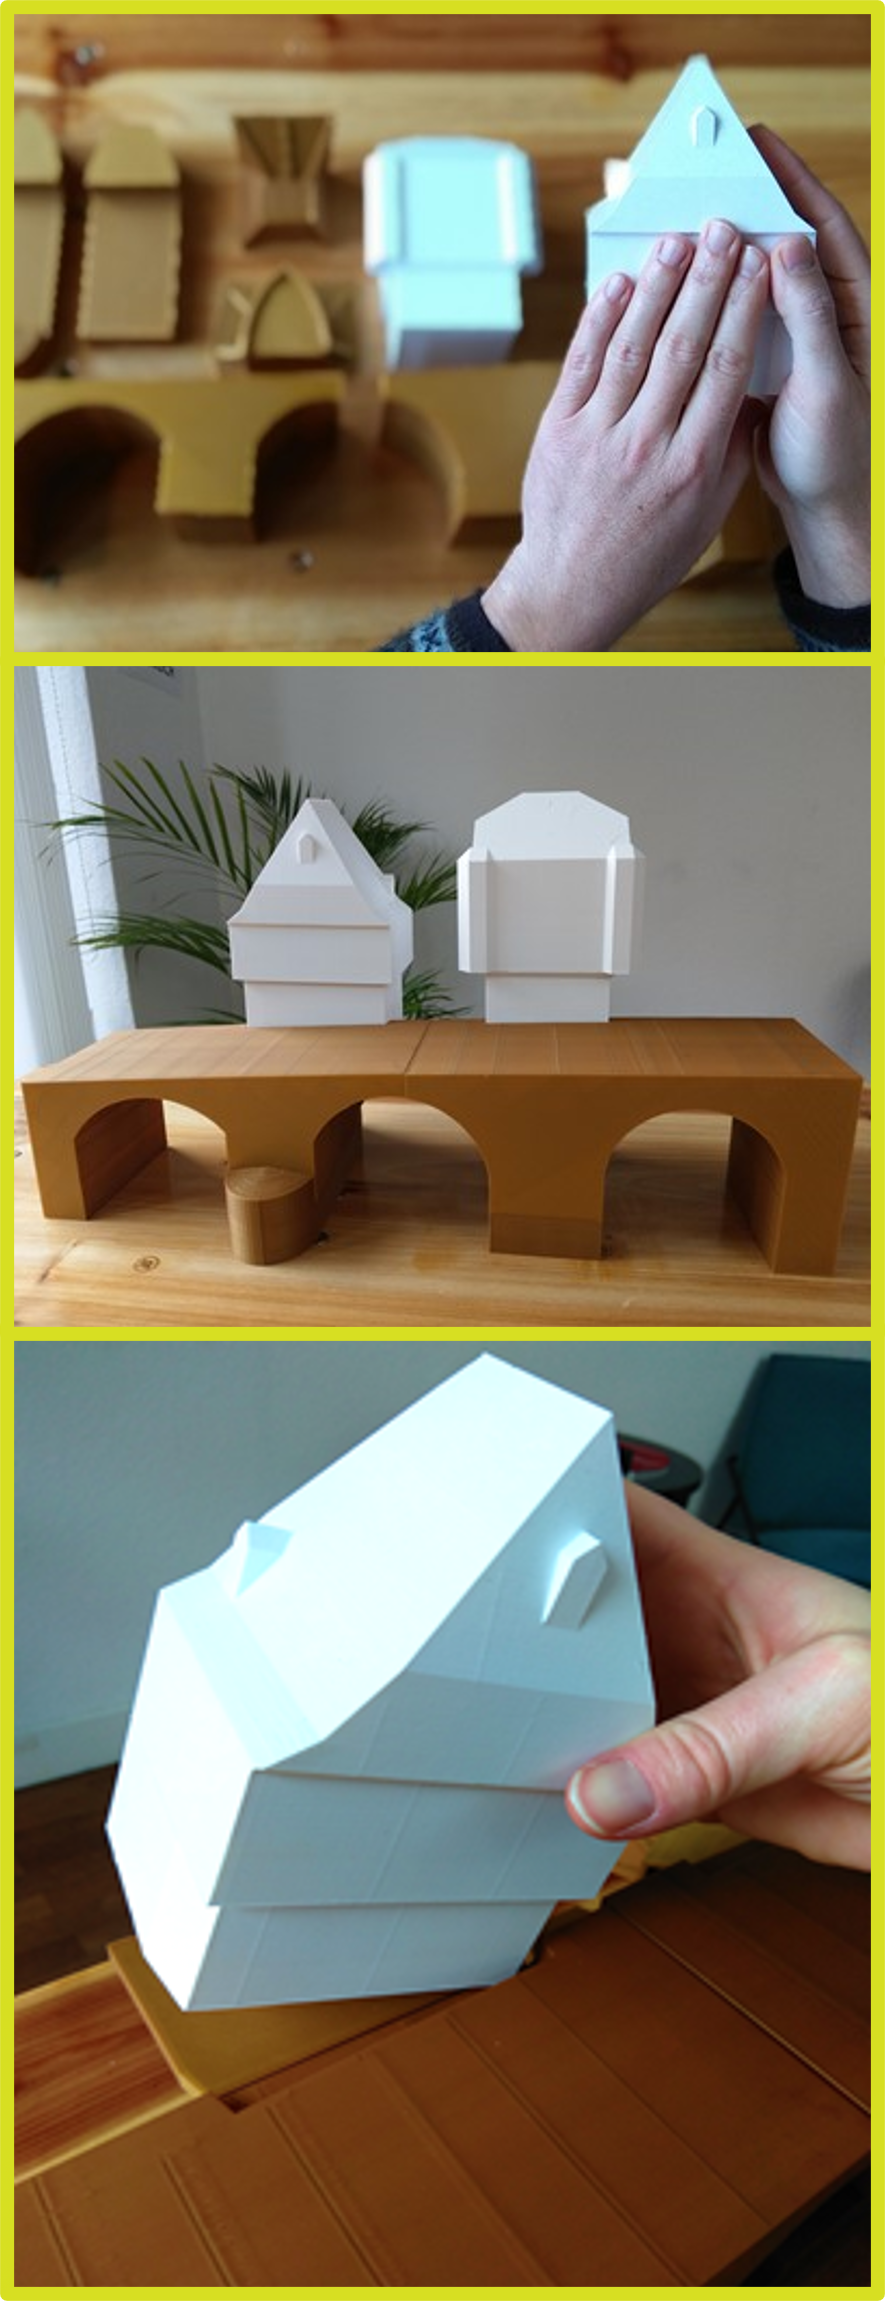 Drei Bilder eines modularen Modells in verschiedenen Stufen - in Einzelteilen, teilweise zusammengebaut, komplett zusammengebaut